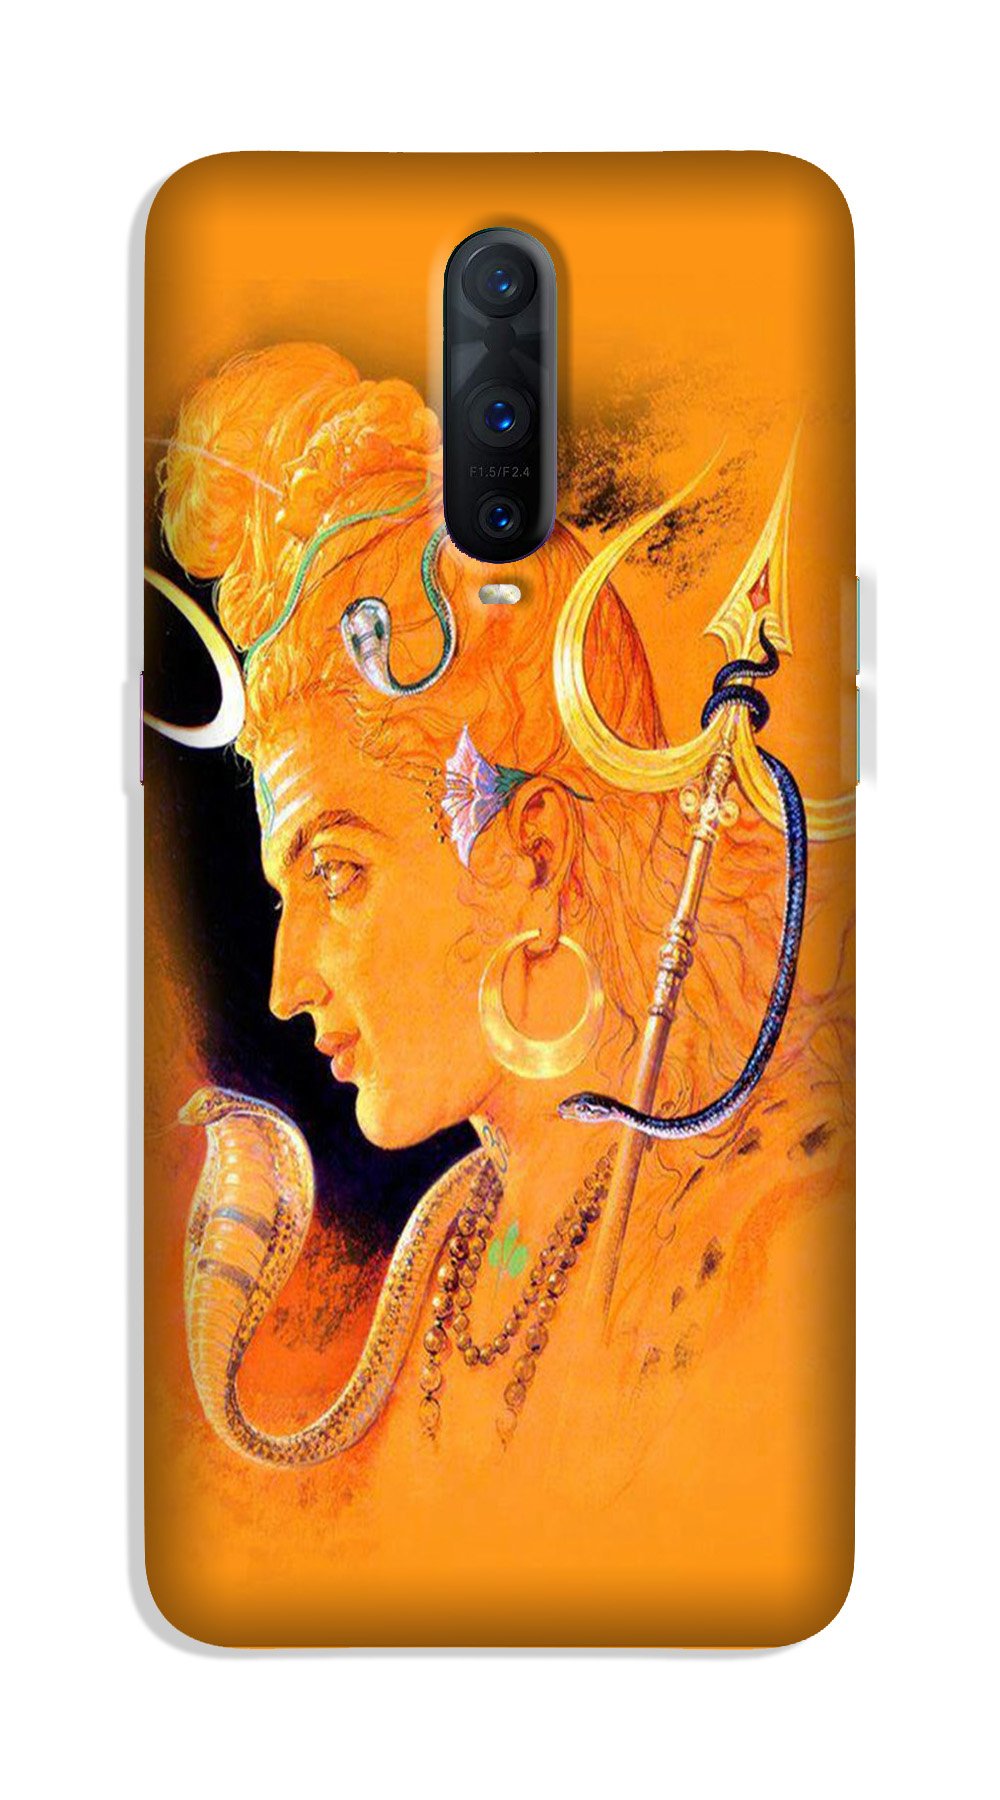 Lord Shiva Case for Oppo R17 Pro (Design No. 293)